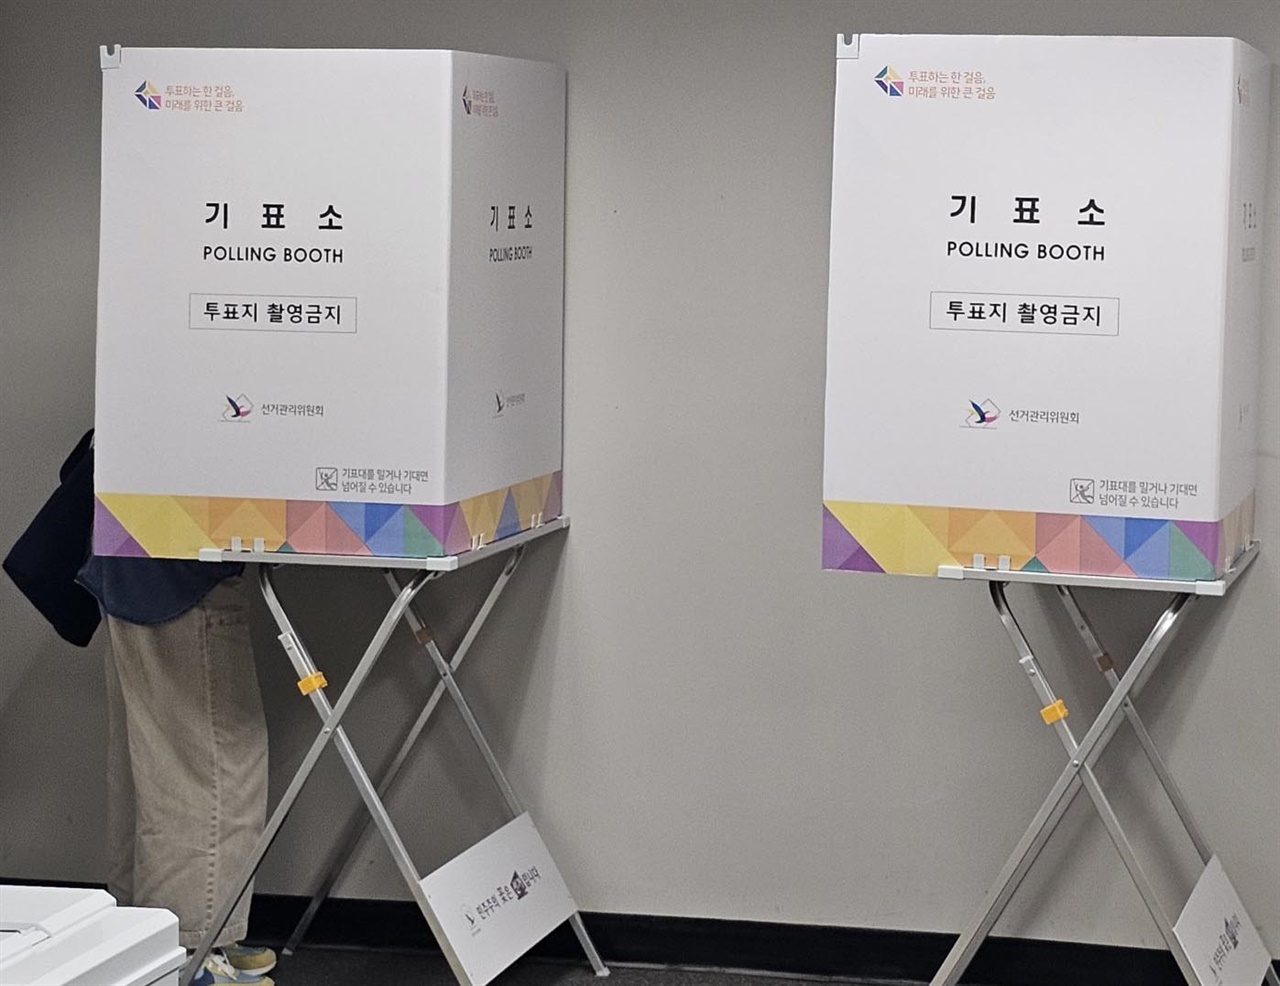 지난 3월 29일부터 31일까지 올랜도 재투표에서 치러진 22대 총선에서 한 재외동포가 투표를 하고 있다.
